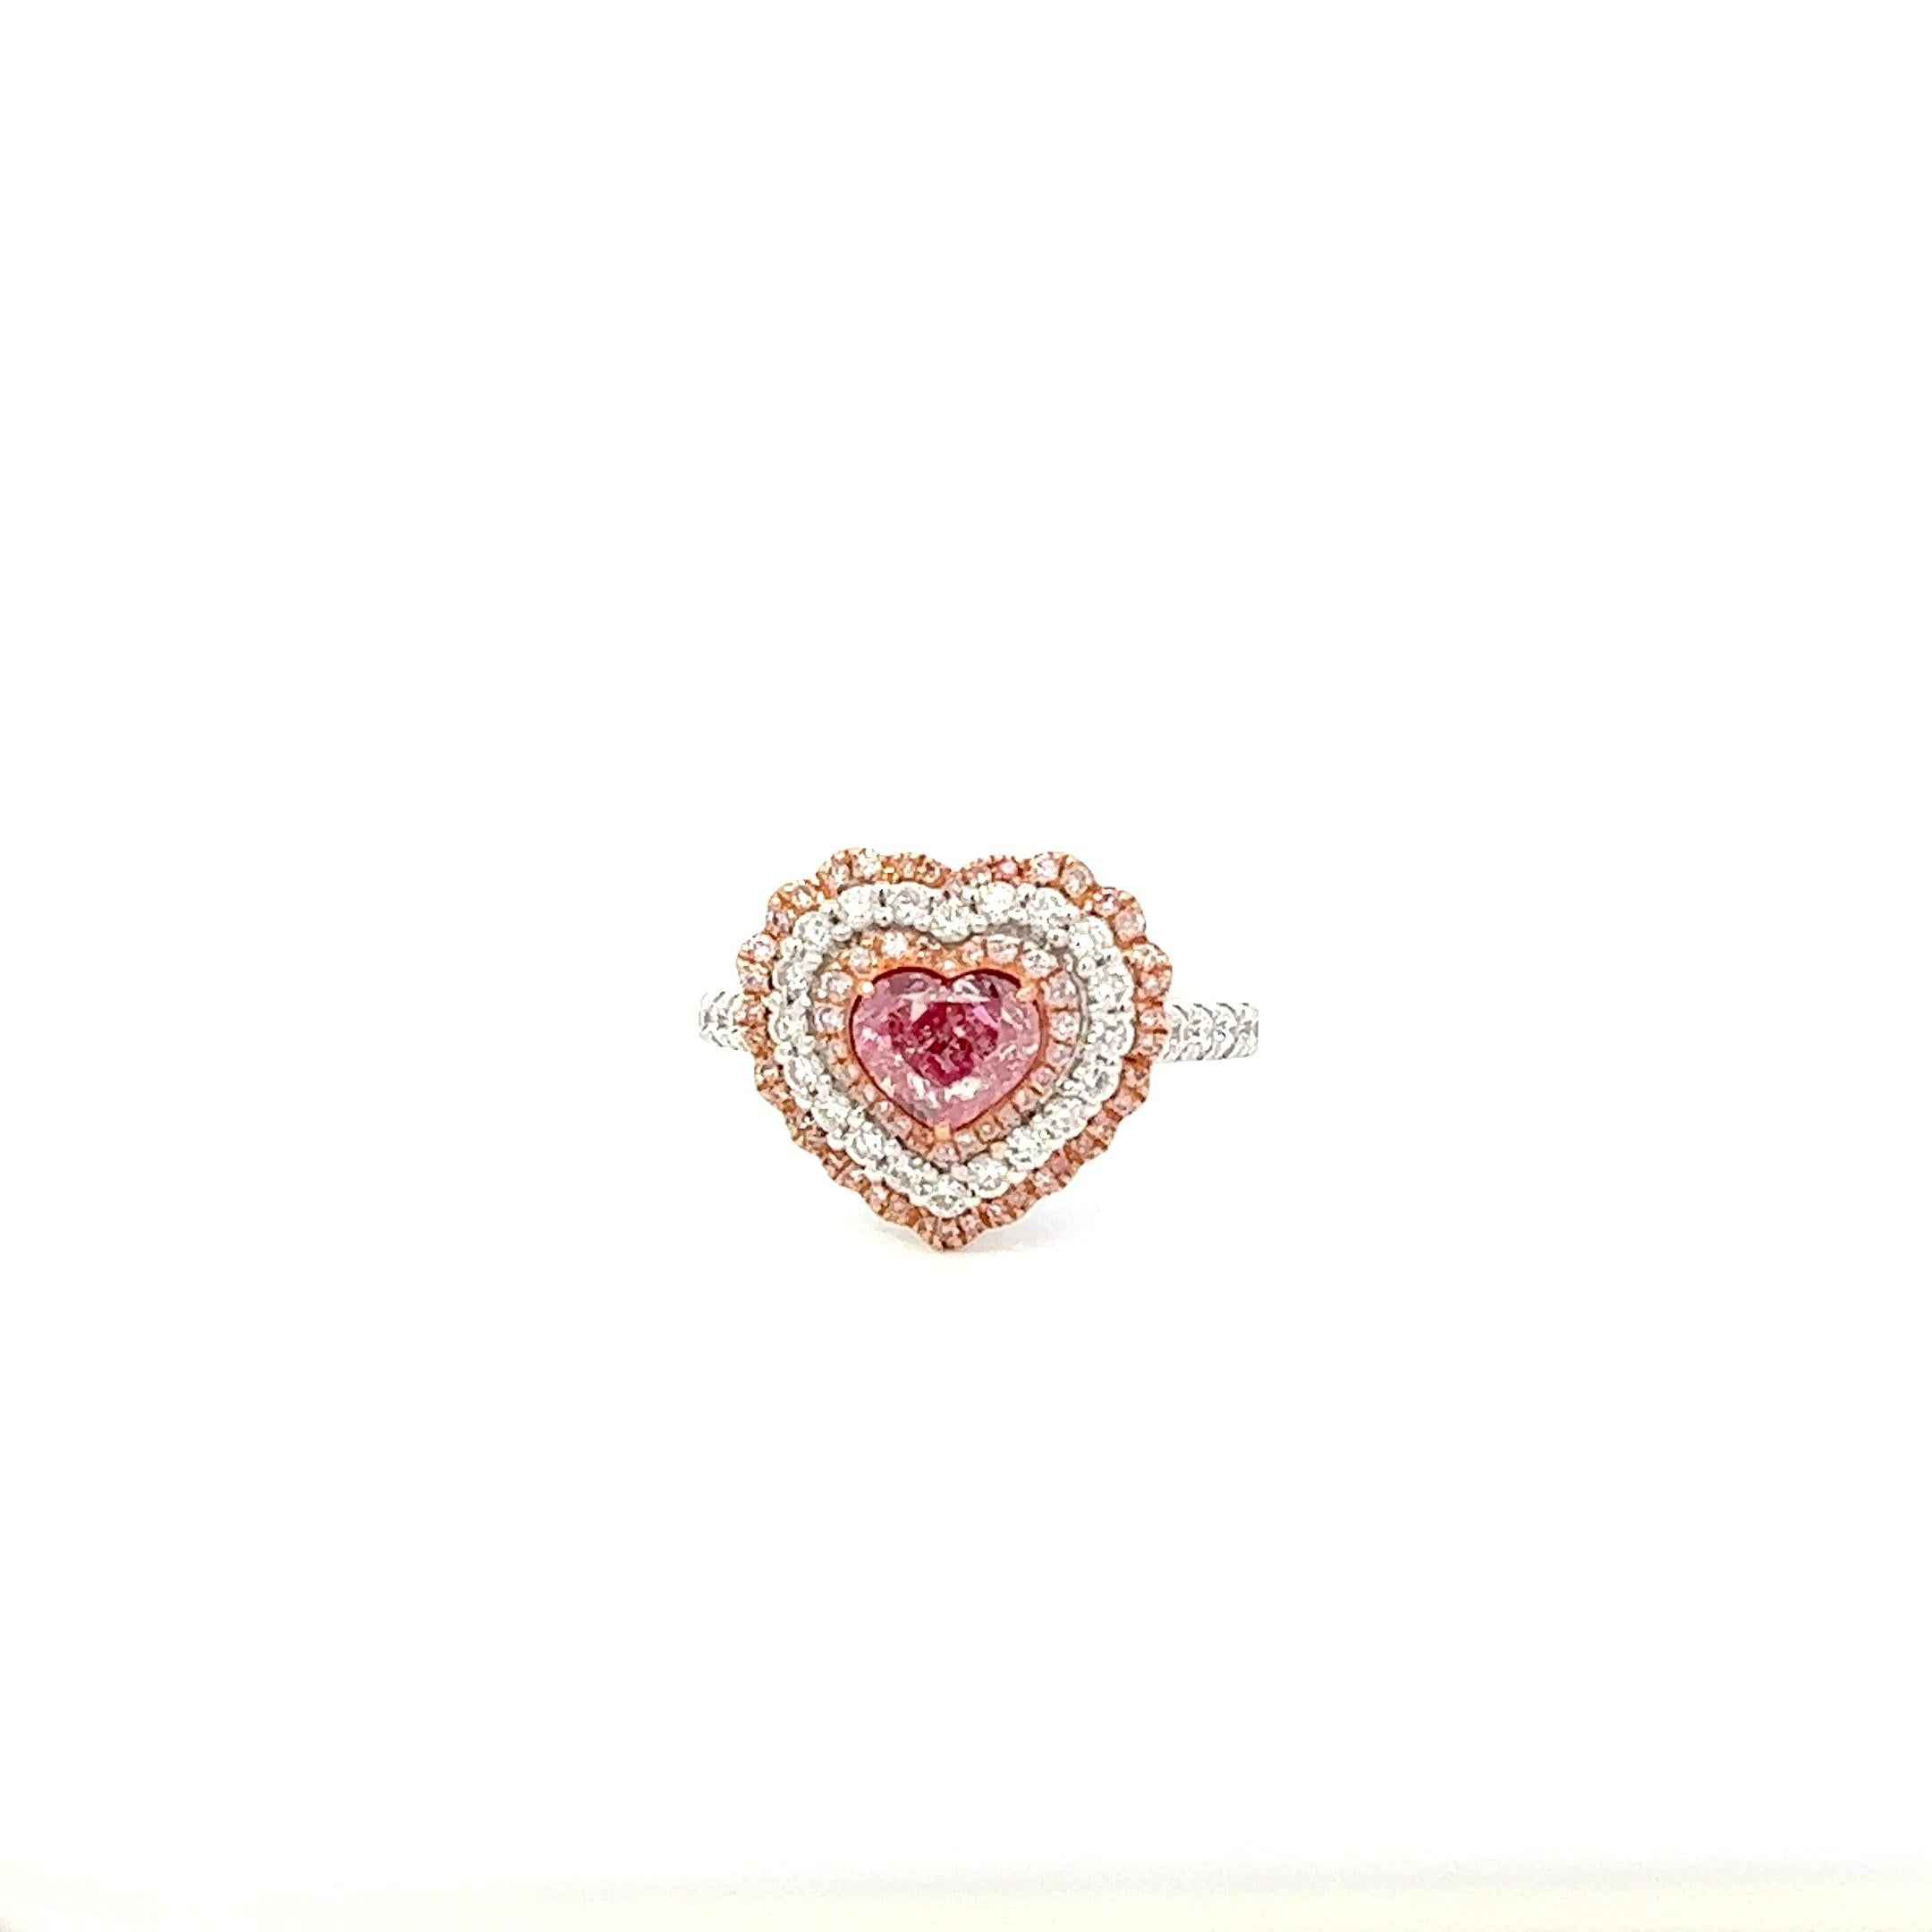 Zentrum: 1.02ct Helles rosa-braunes Herz I1 GIA # 5373734540
Fassung: 18k Weißgold 0,65ctw rosa und weiße Diamanten